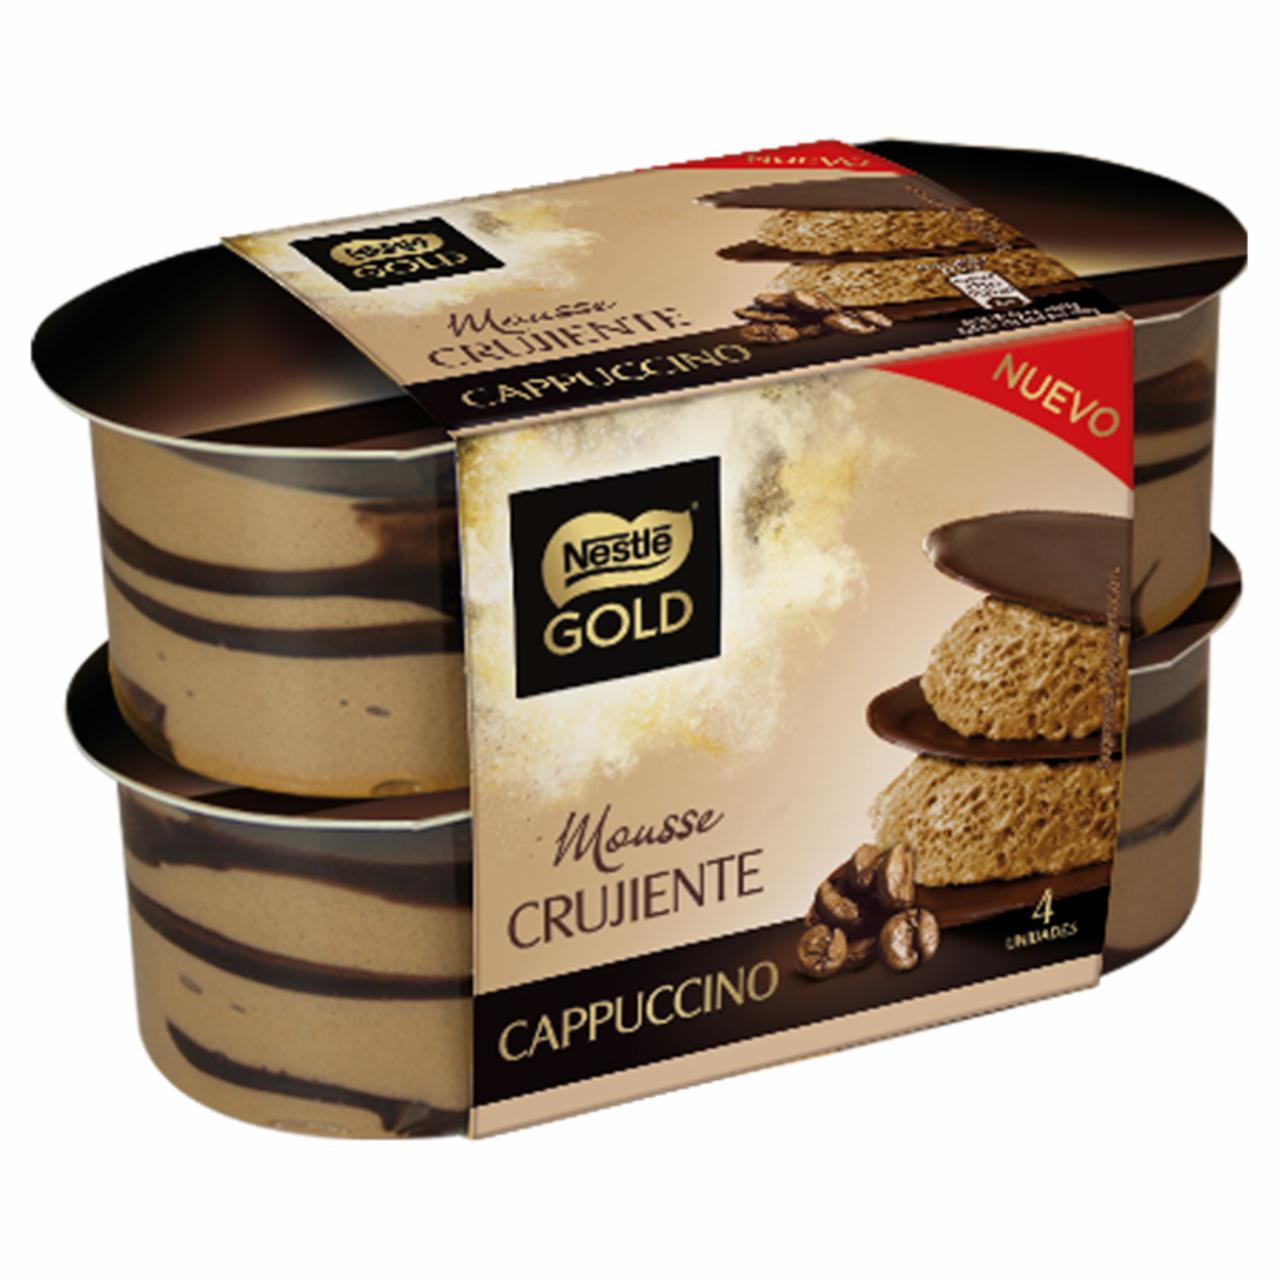 Képek - Nestlé Gold kávés mousse desszert kakaó réteggel 4 x 57 g (228 g)